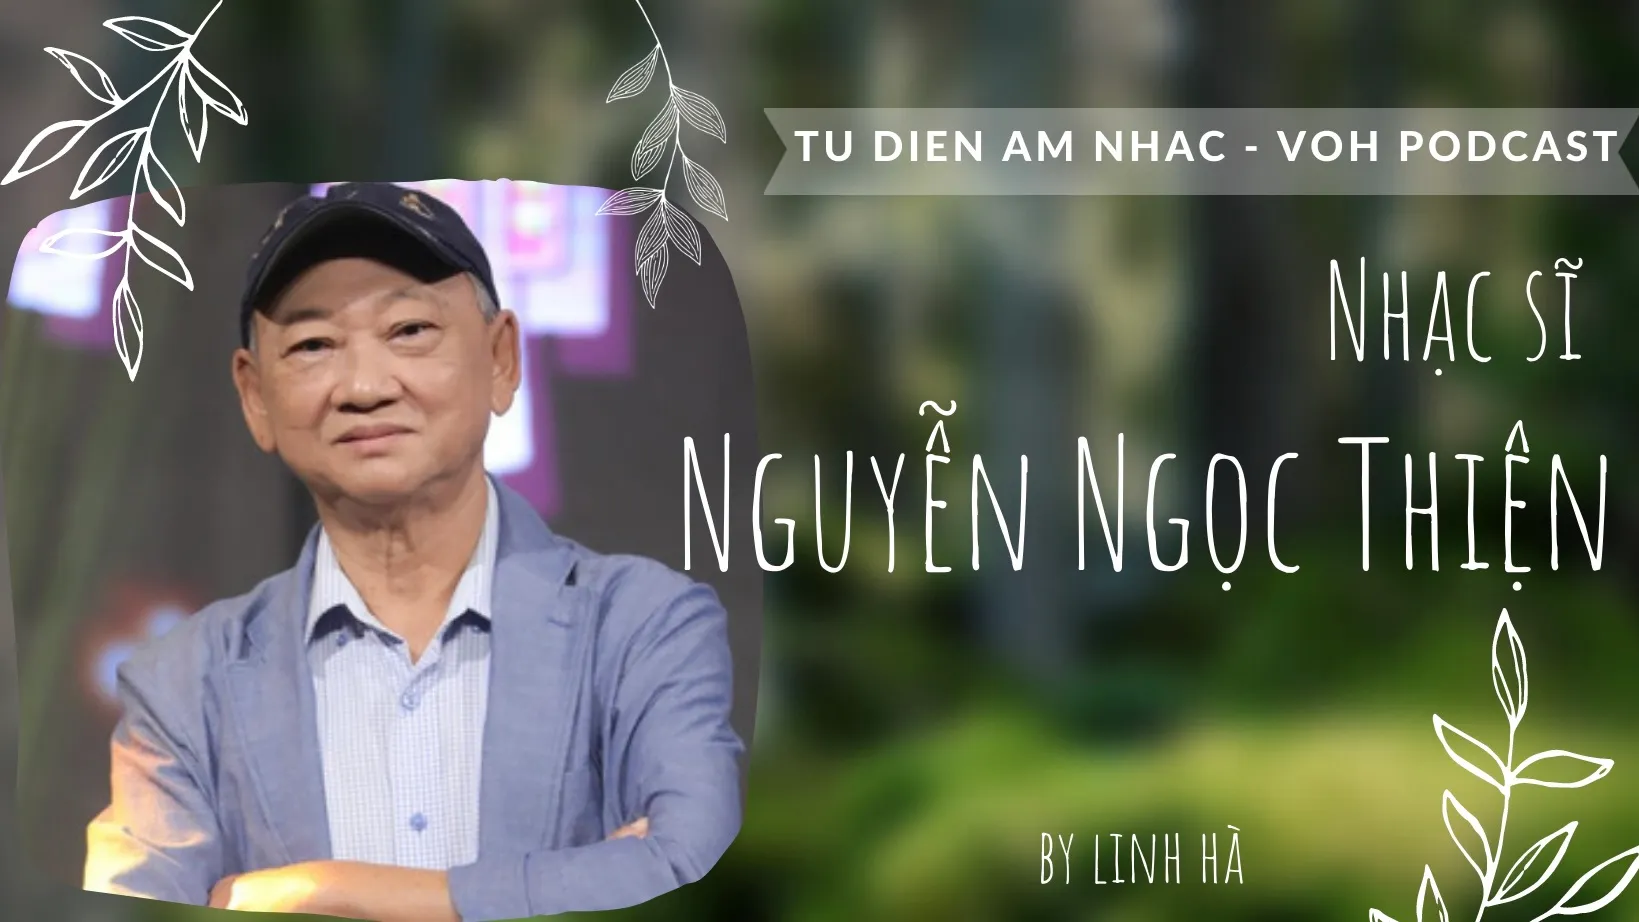 Nhạc sĩ Nguyễn Ngọc Thiện - Kỳ 1: Nhạc sĩ học trò